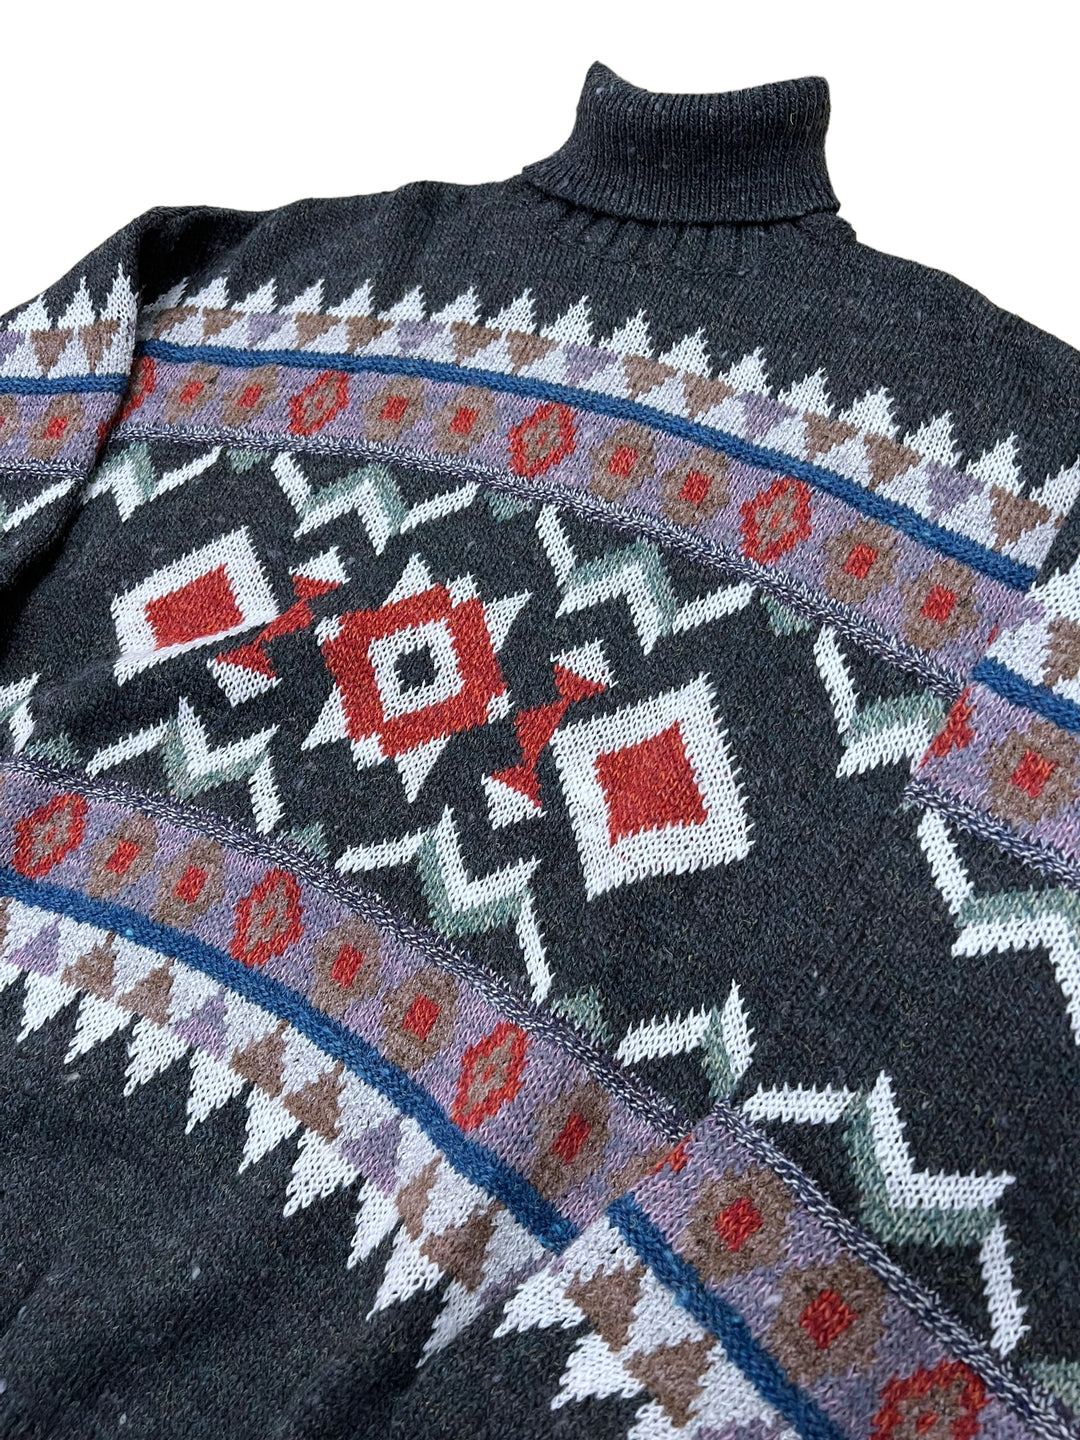 Vintage turtleneck sweater men’s large